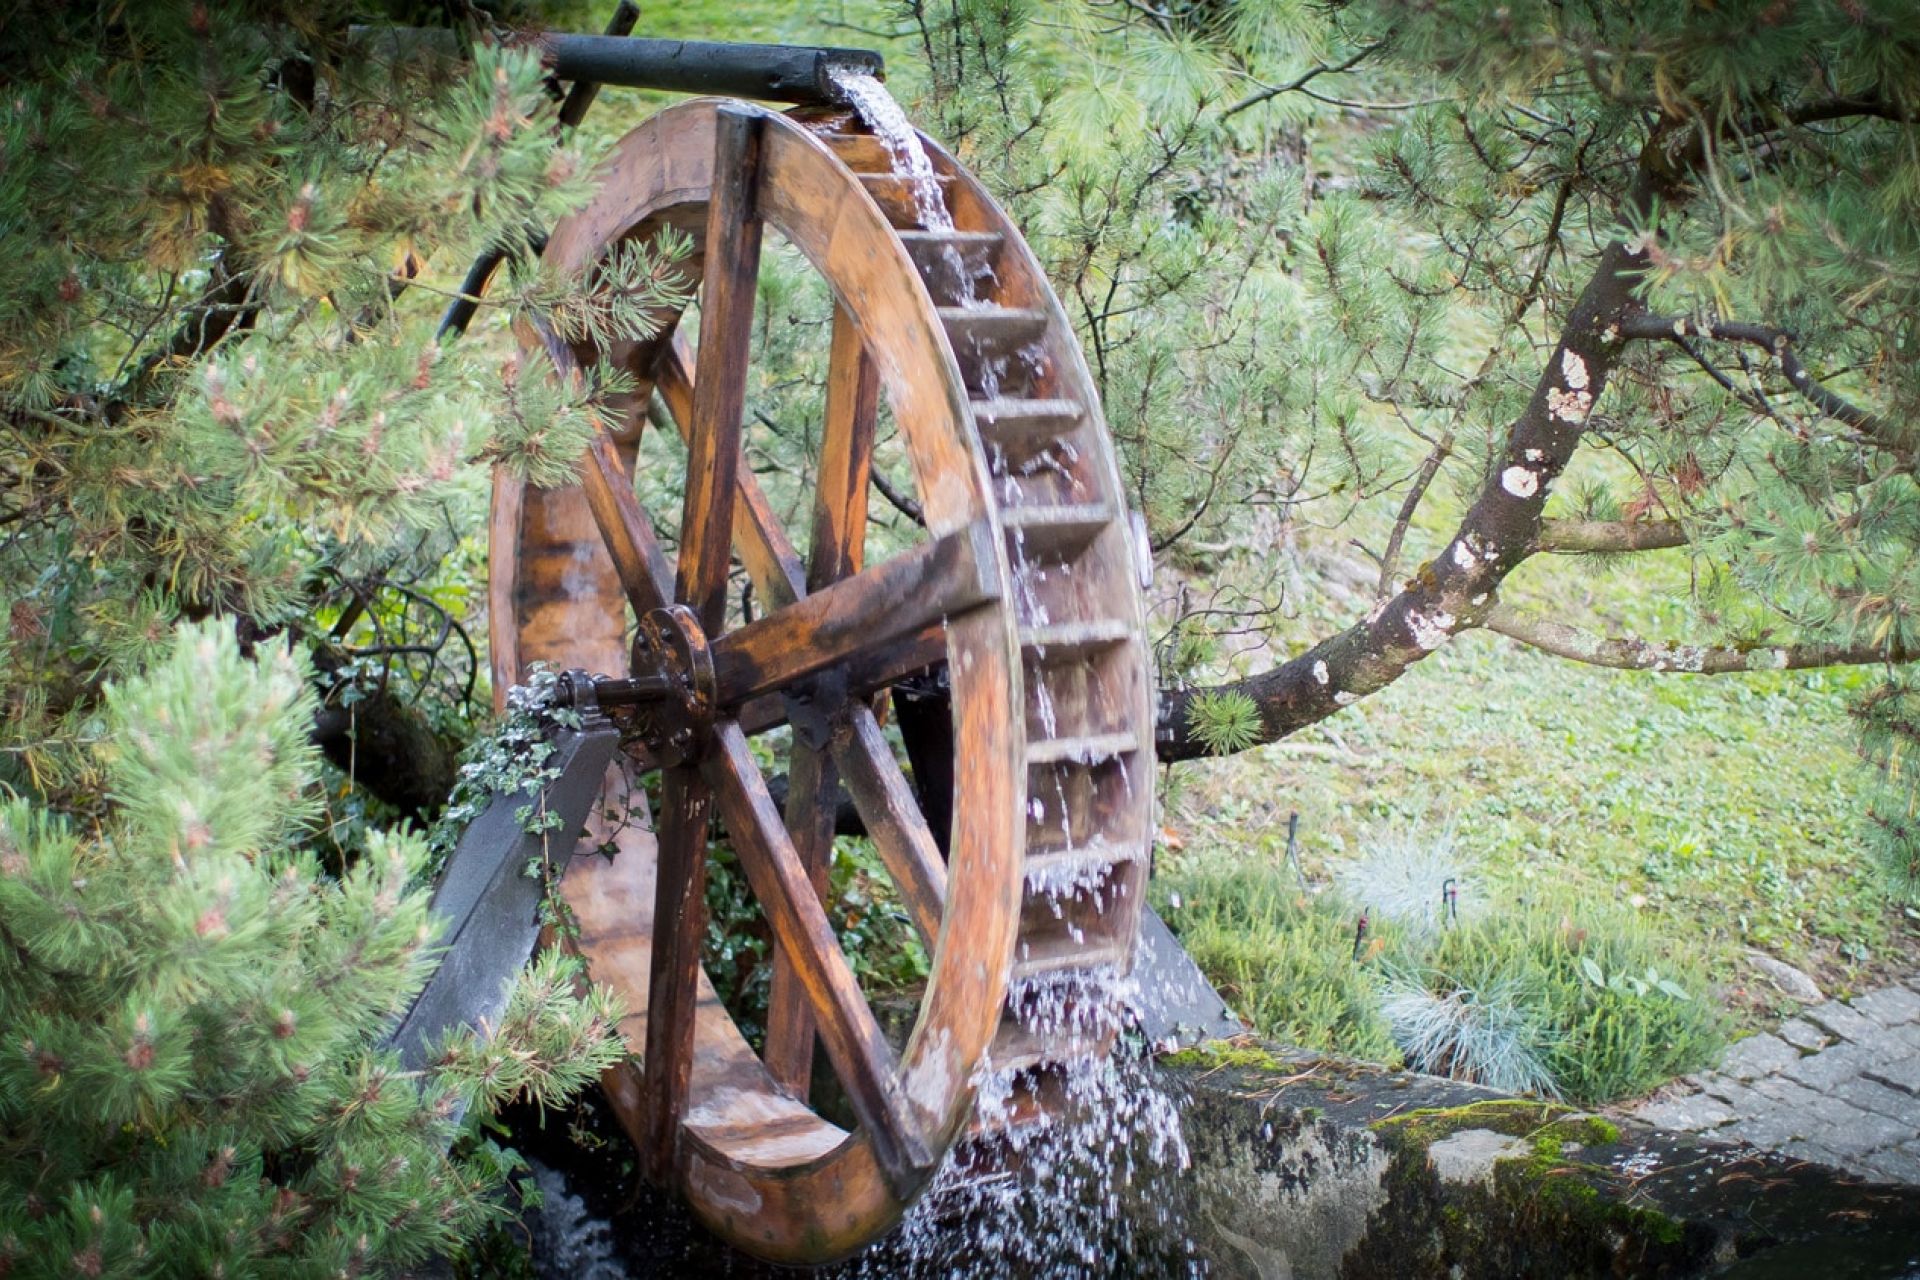 Moulin du Creux la roue